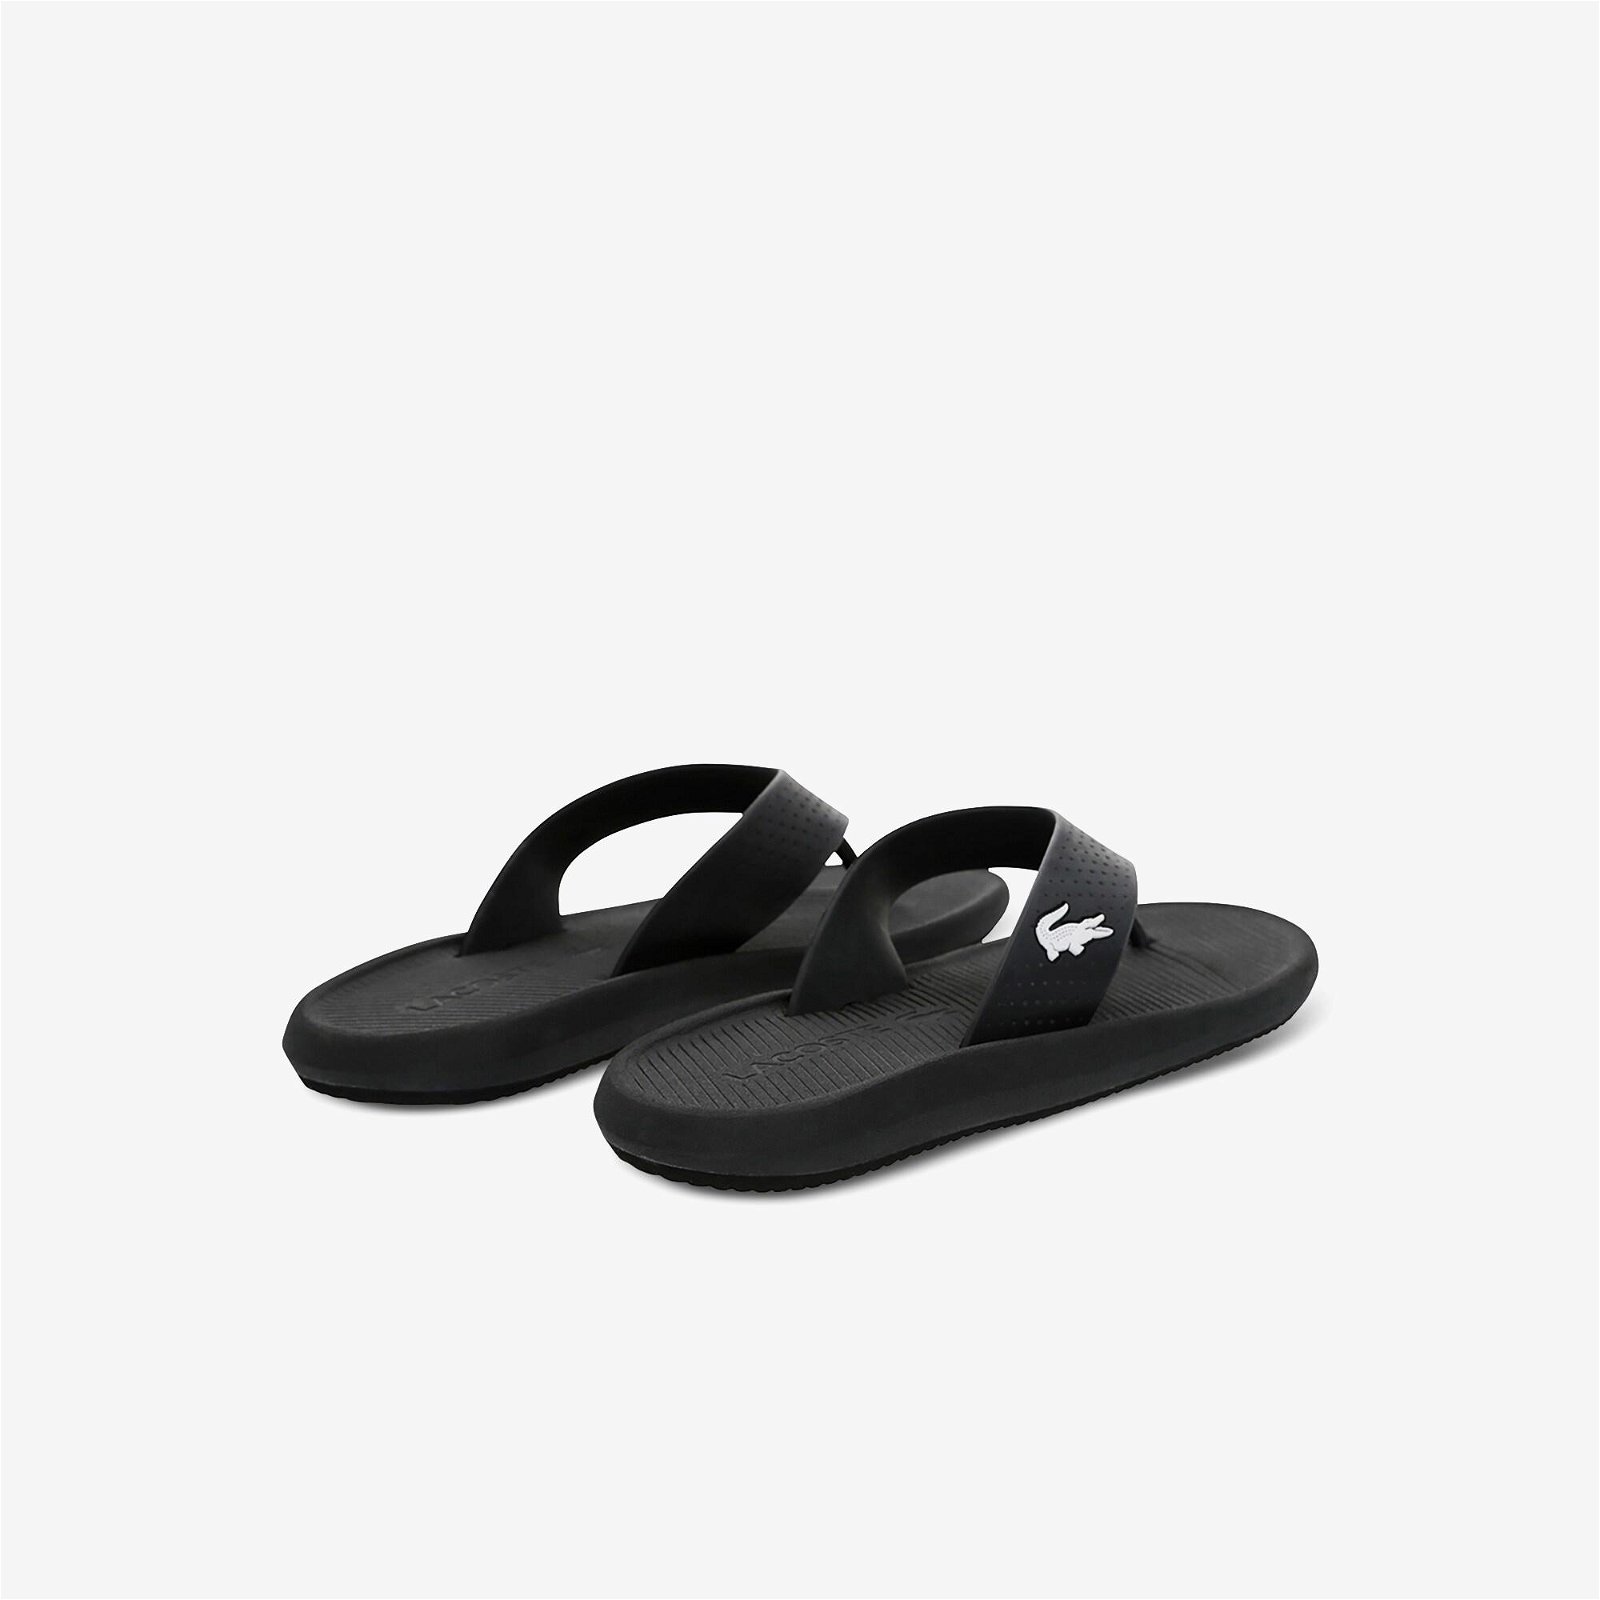 Lacoste Croco Sandal 219 1 Cma Erkek Siyah - Beyaz Terlik